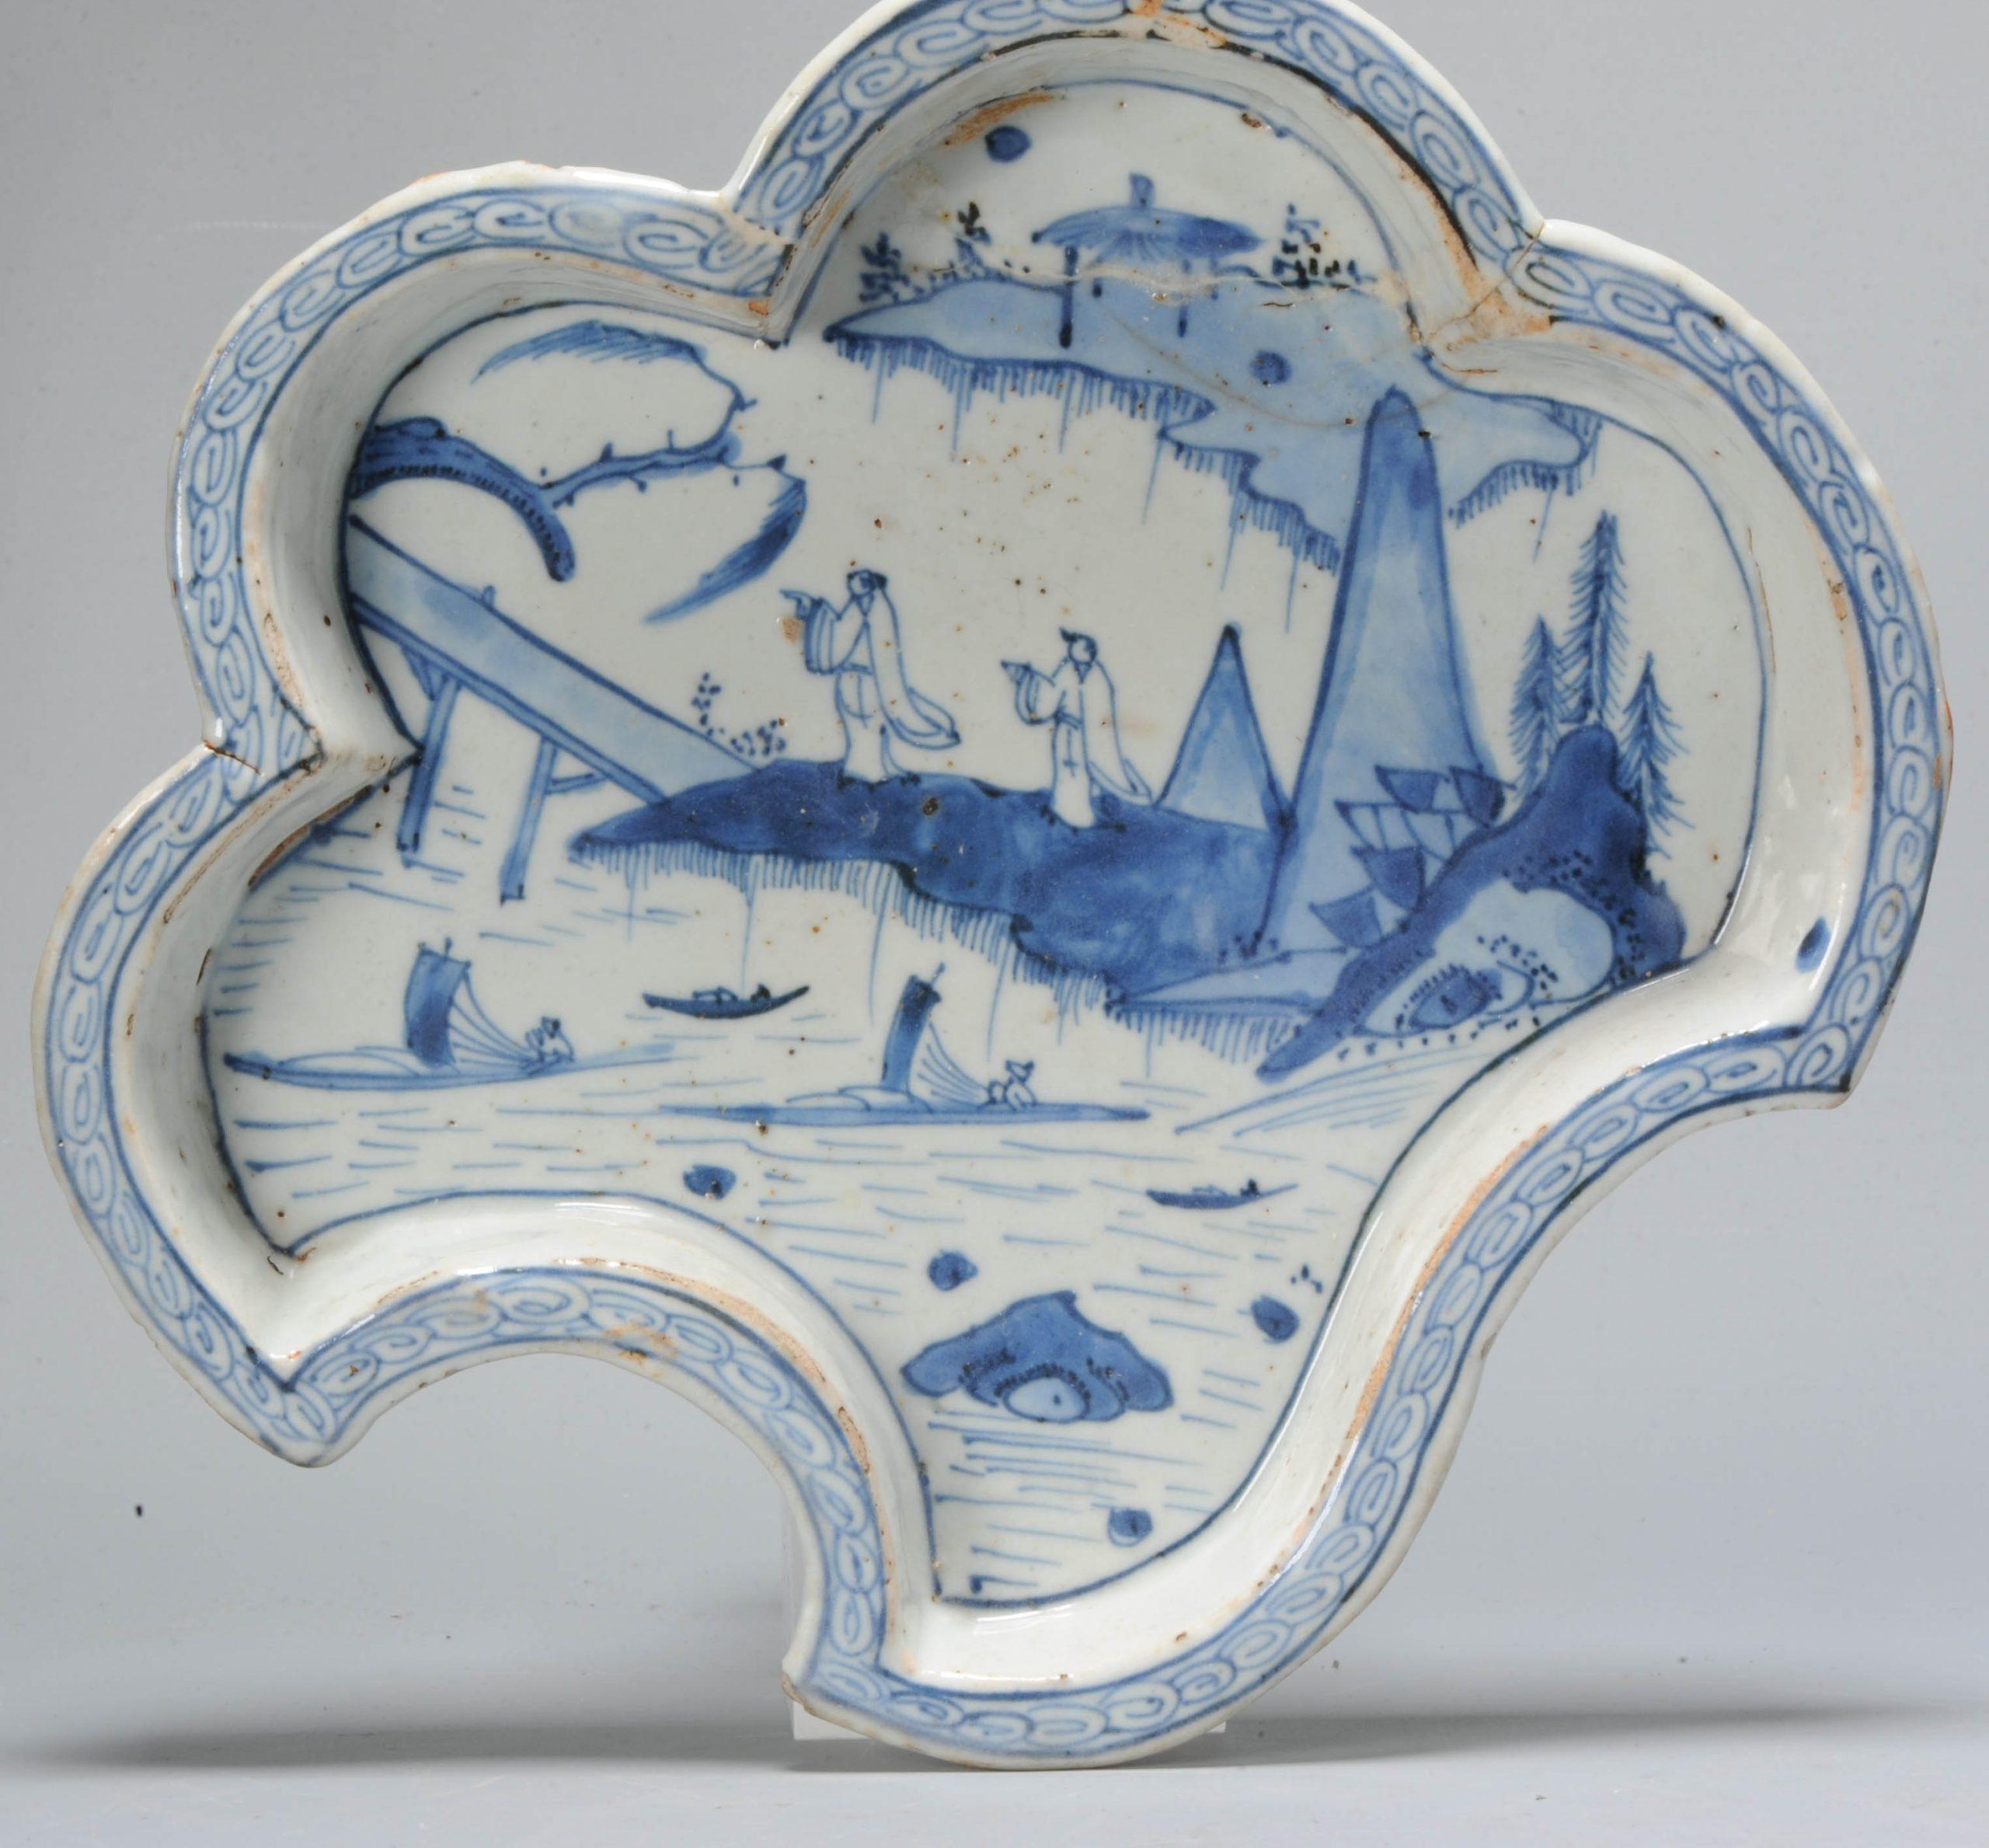 Magnifique plat de service en bleu et blanc avec une scène de paysage typique de la période Ming. La forme de cette pièce est très inhabituelle, nous avons trouvé des plats de service de la même période dans toutes sortes de formes (voir photos)